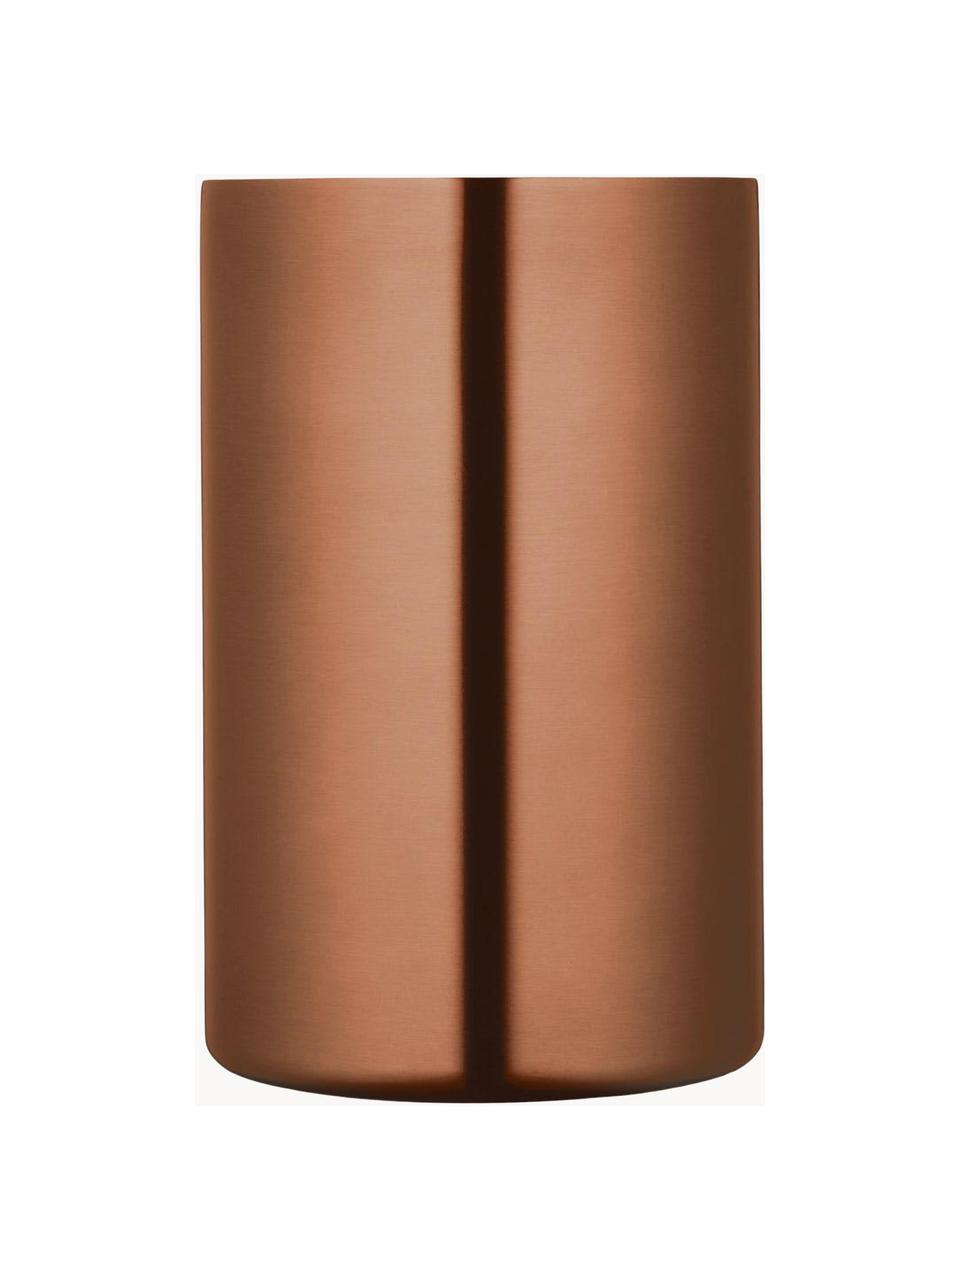 Flaschenkühler BarCraft, Stahl, beschichtet, Kupferfarben, Ø 12 x H 20 cm